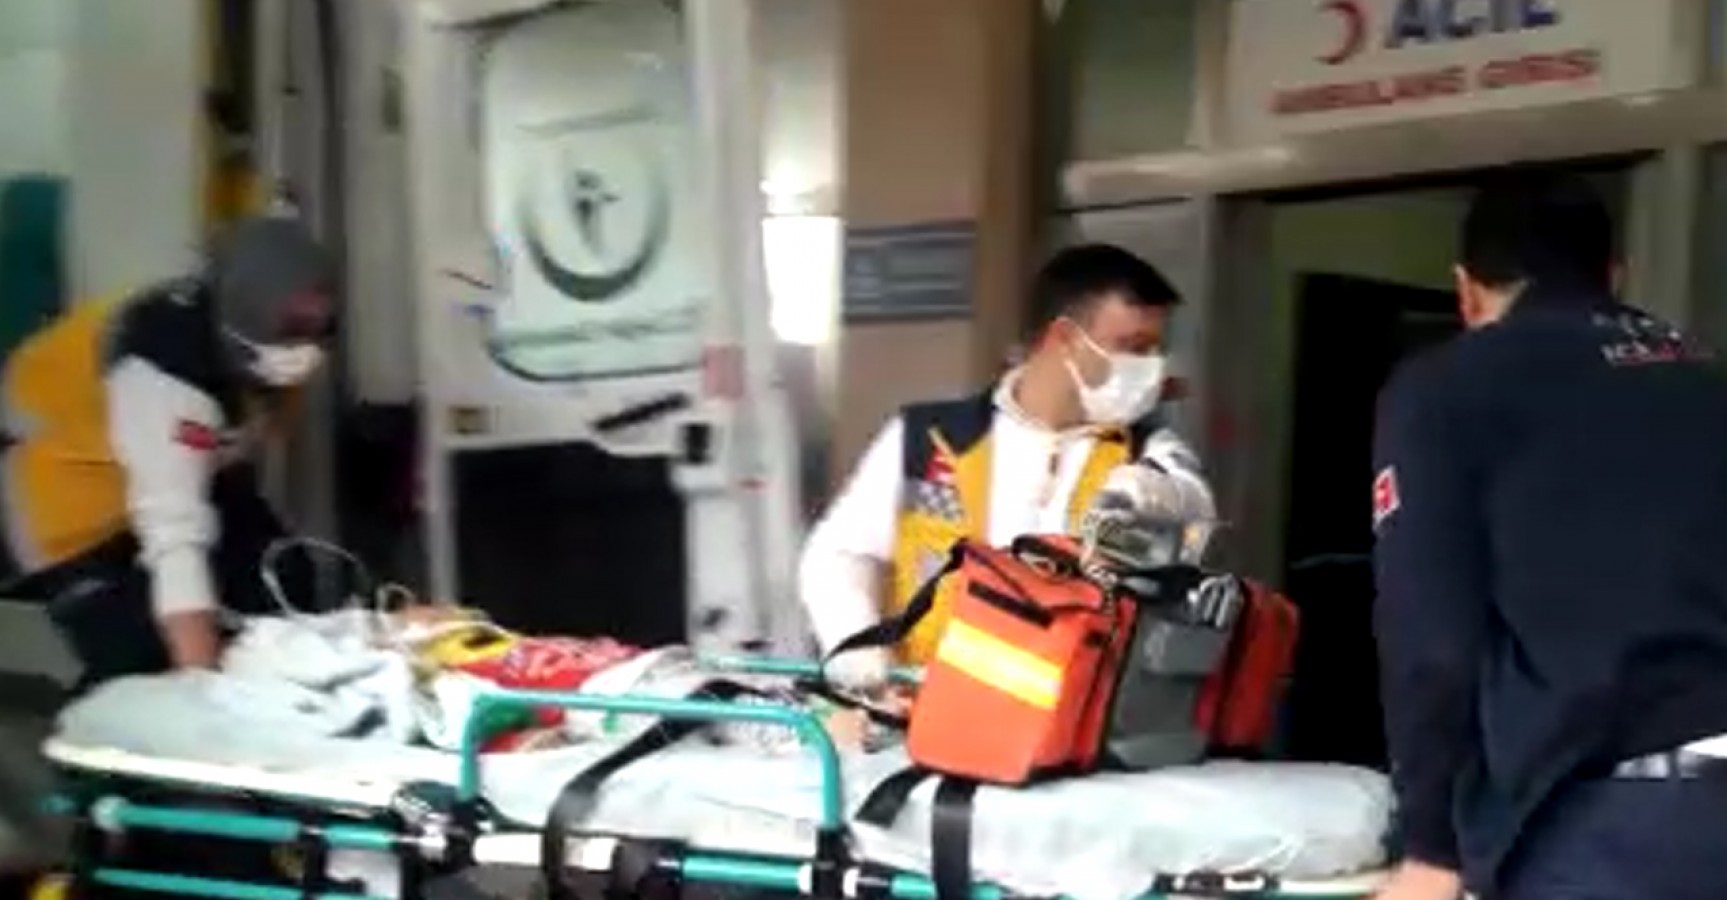 Merdivenden düşen 11 aylık bebek hastaneye kaldırıldı!;